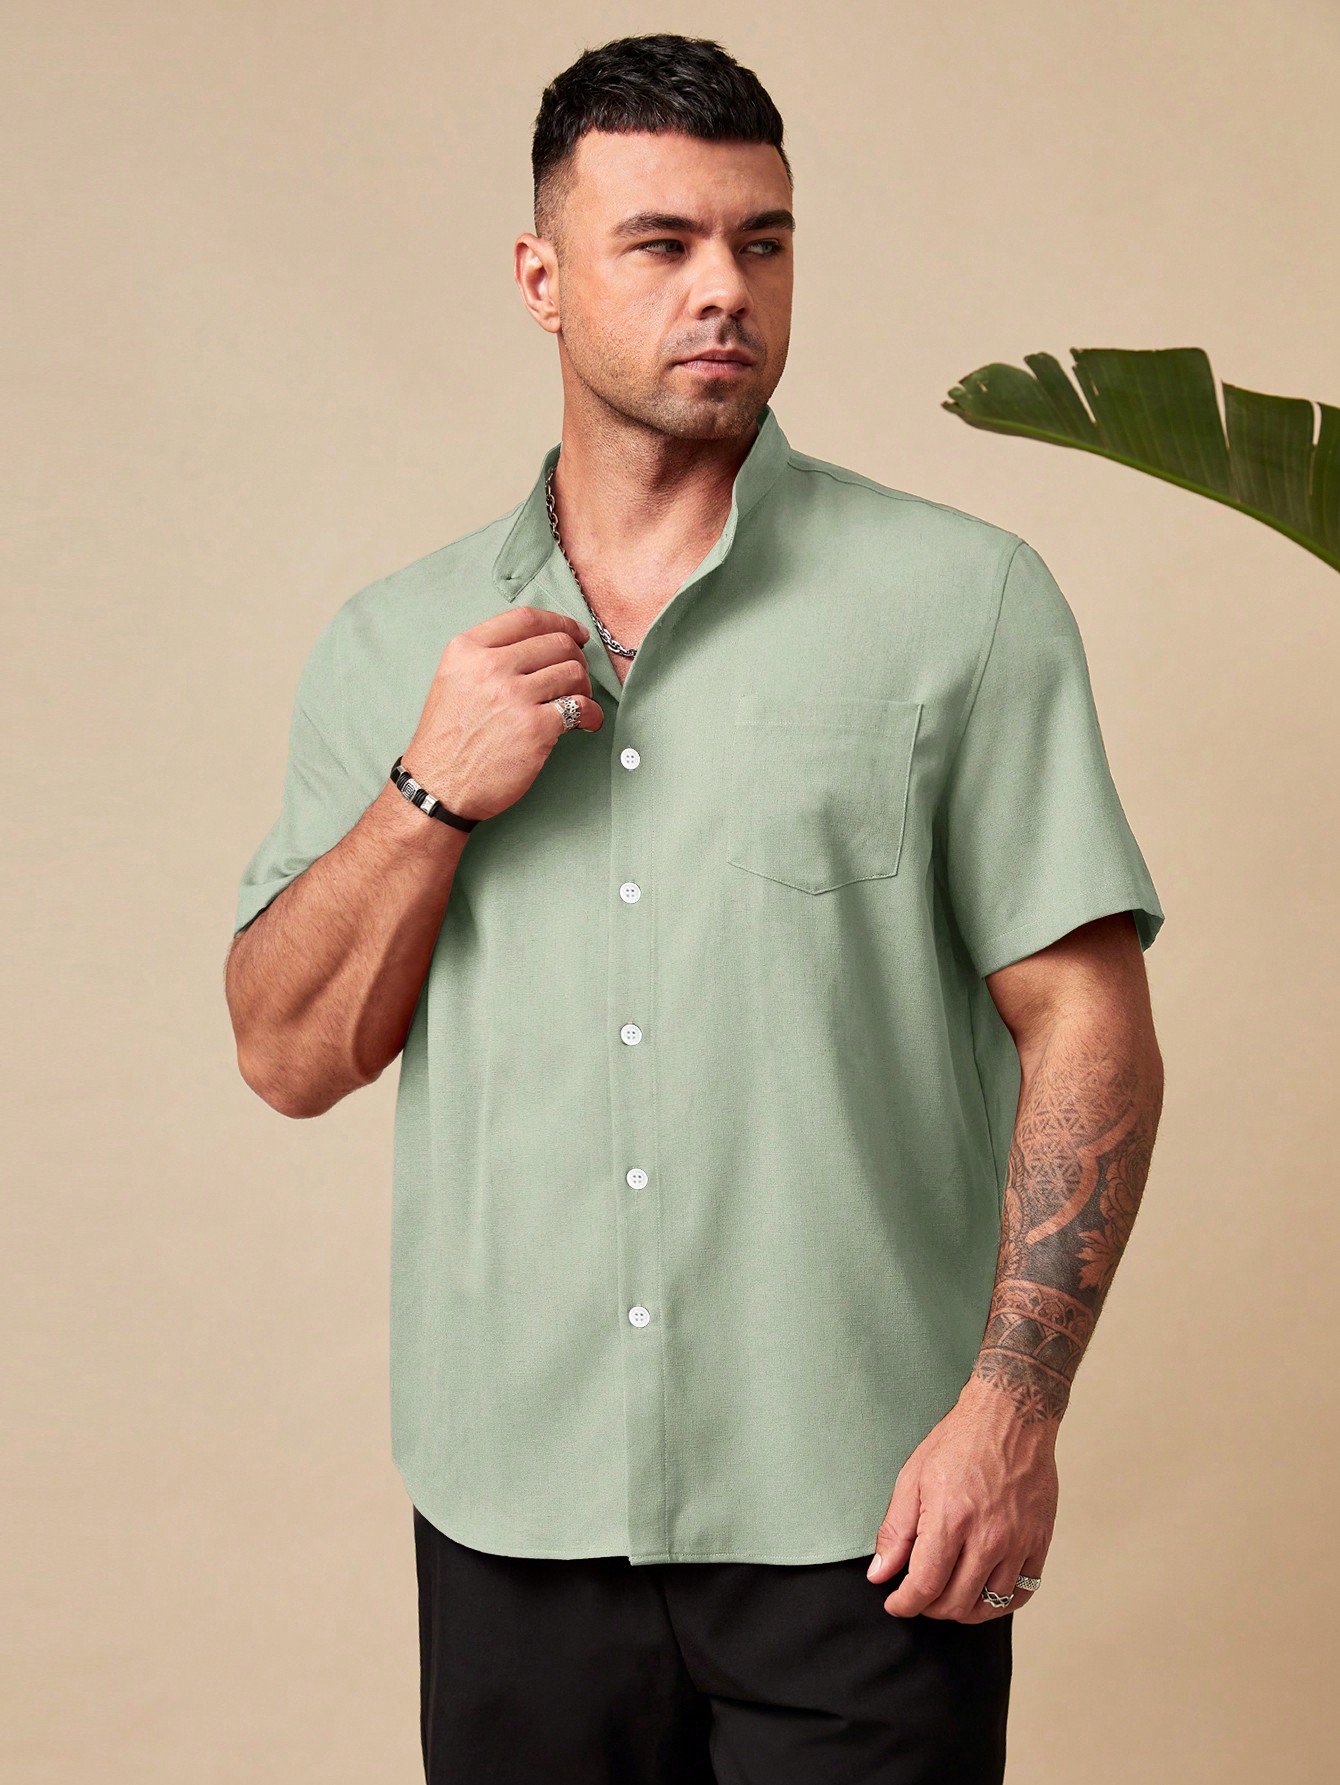 Manfinity Homme Мужская рубашка свободного кроя больших размеров на пуговицах с короткими рукавами и накладными карманами больших размеров, зеленый